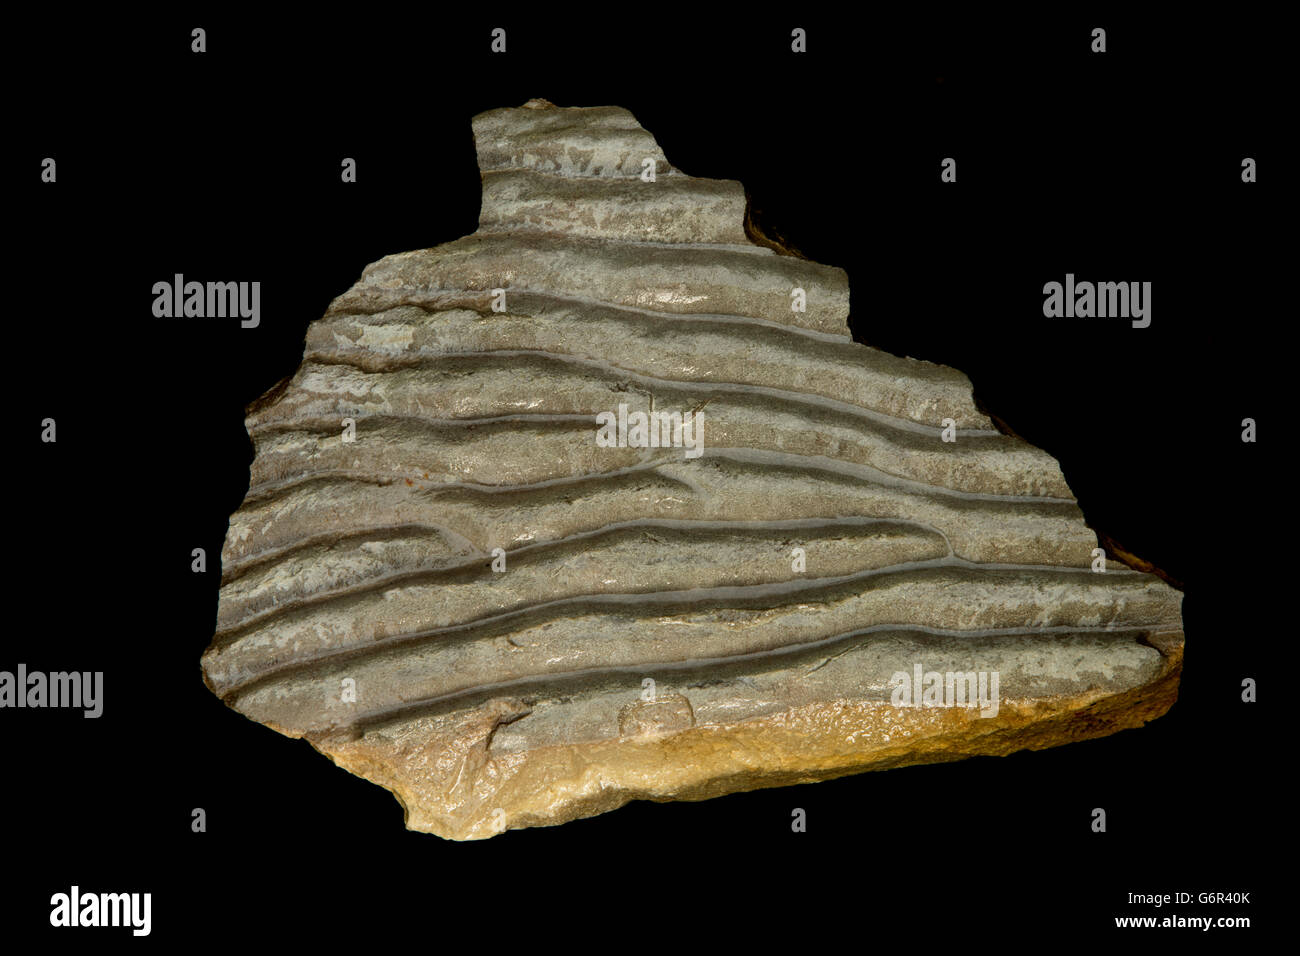 Fossile Rippelmarken, fossilen Trübung Rippelmarken aus Rocky Mountain Belt Supergroup, nordwestlichen Montana, USA, Sandstein Stockfoto